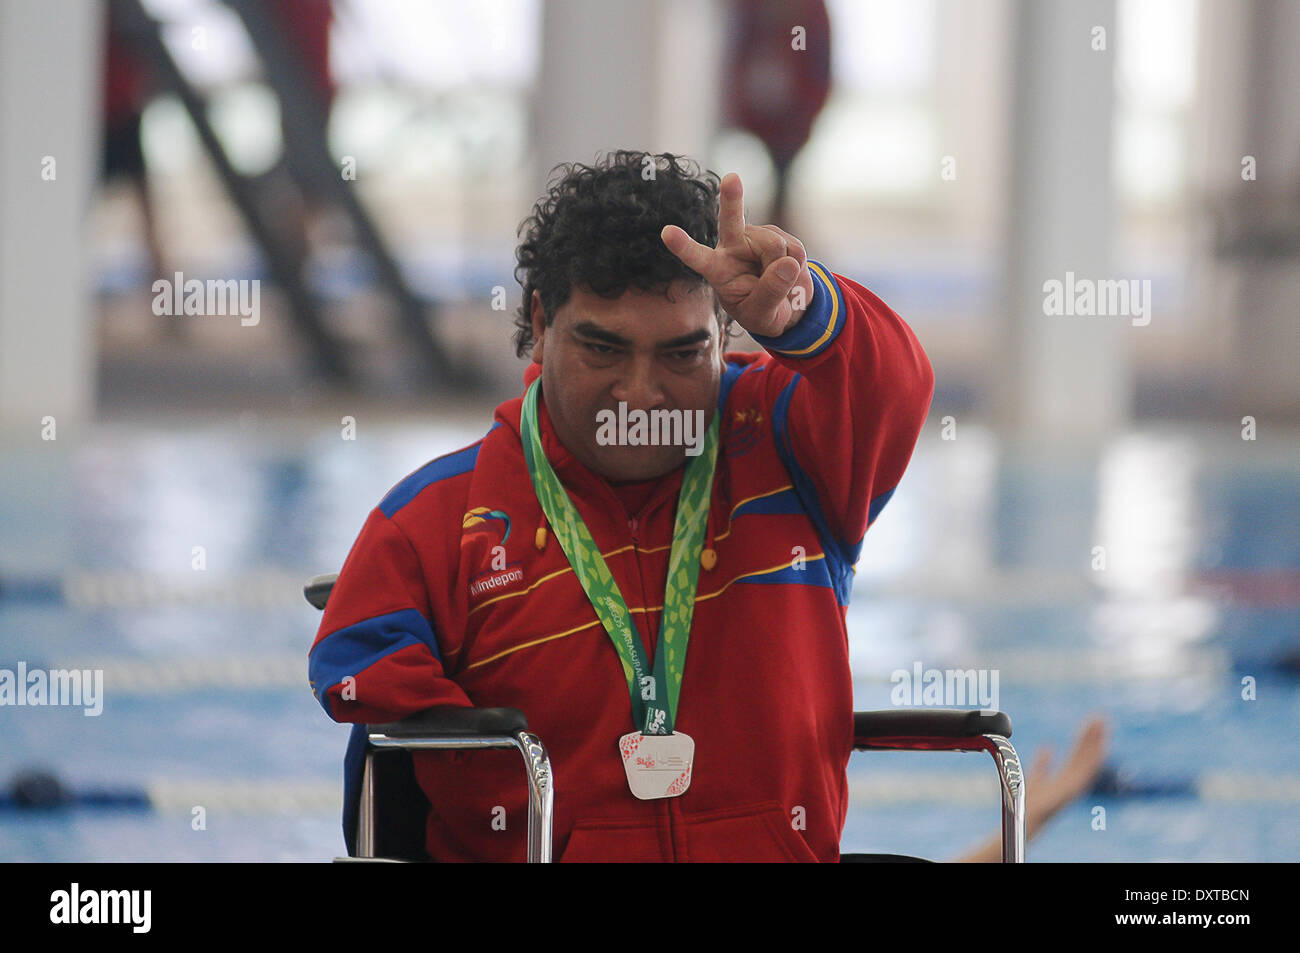 SANTIAGO, Cile - 28 Marzo: un nuotatore venezuelano e vincitore della medaglia d oro, celebra in corrispondenza del primo mai Para Giochi Panamericani del 28 marzo 2014 a Santiago del Cile. (Foto di Fernando Lavoz/Pacific Stampa) Foto Stock